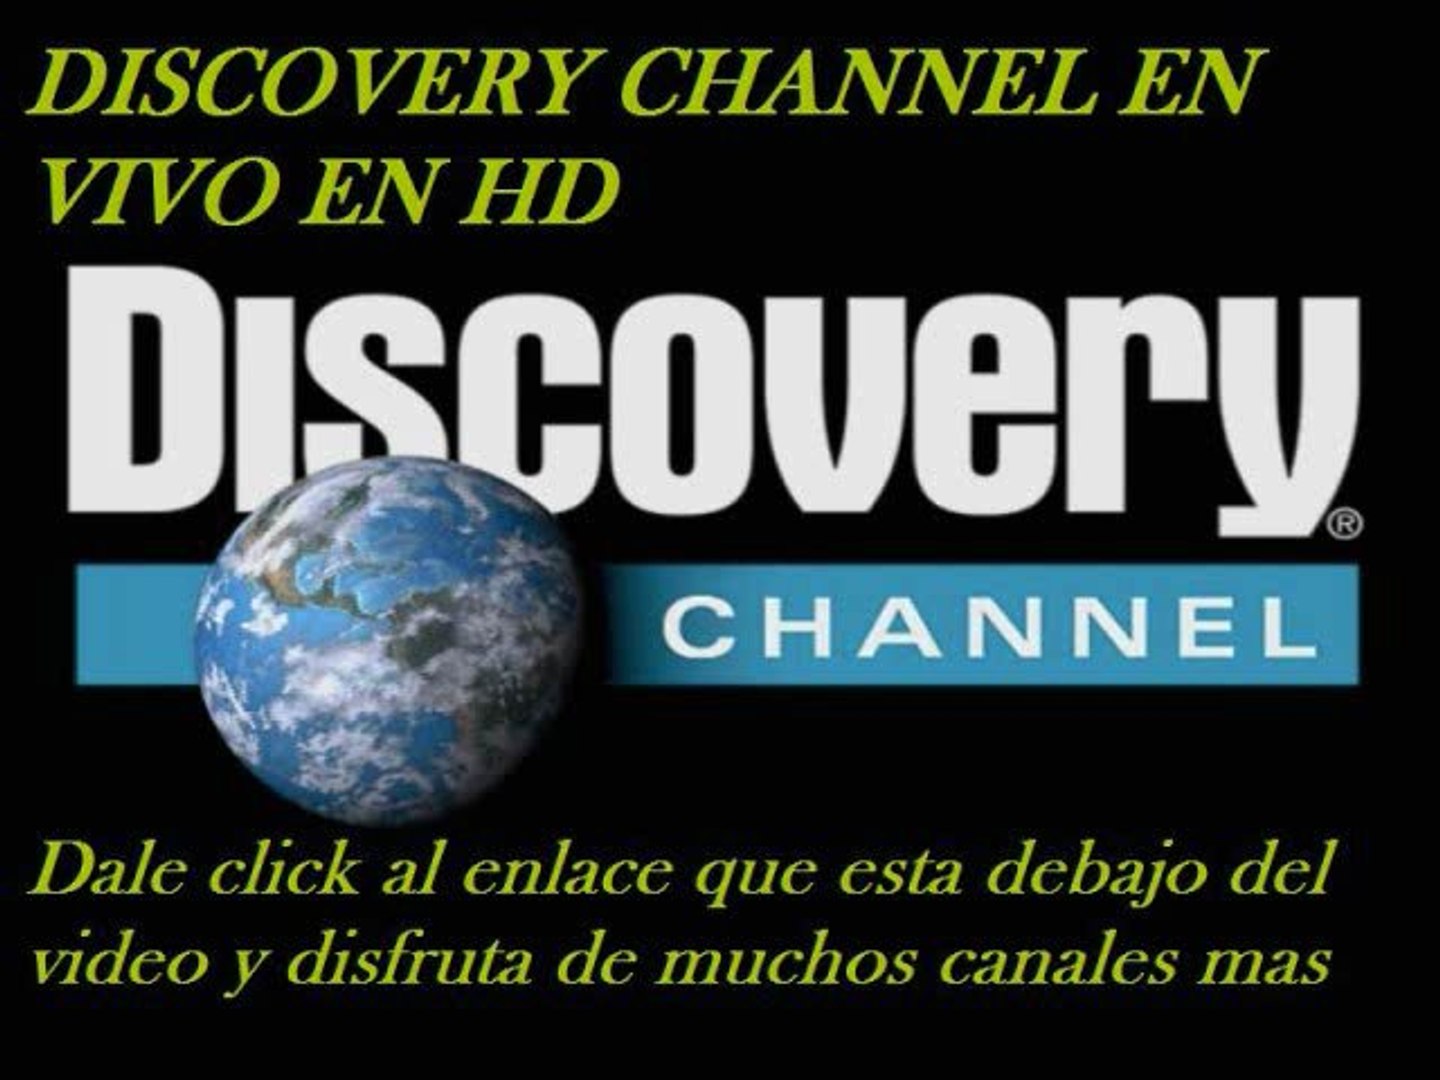 Дискавери ченел программа. Дискавери логотип. Дискавери канал. Телеканал Discovery channel. Логотип телеканала Discovery.